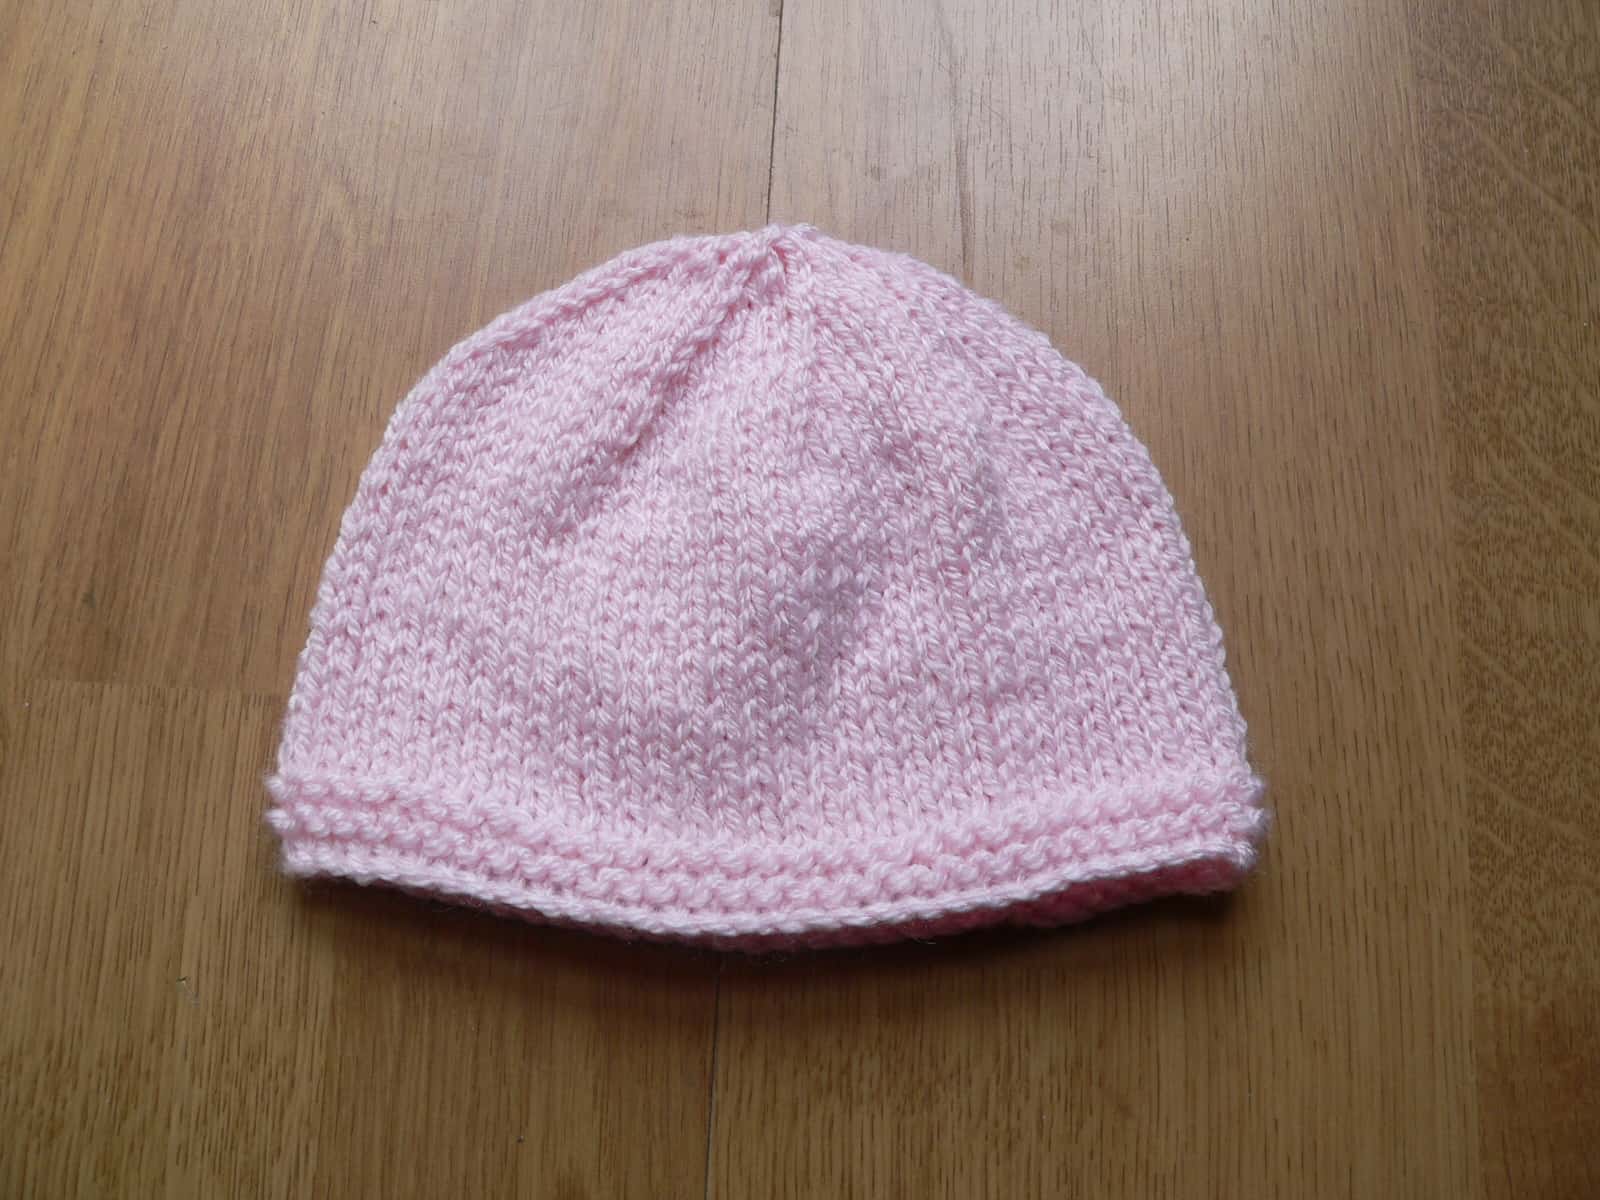 Simple classic newborn cap